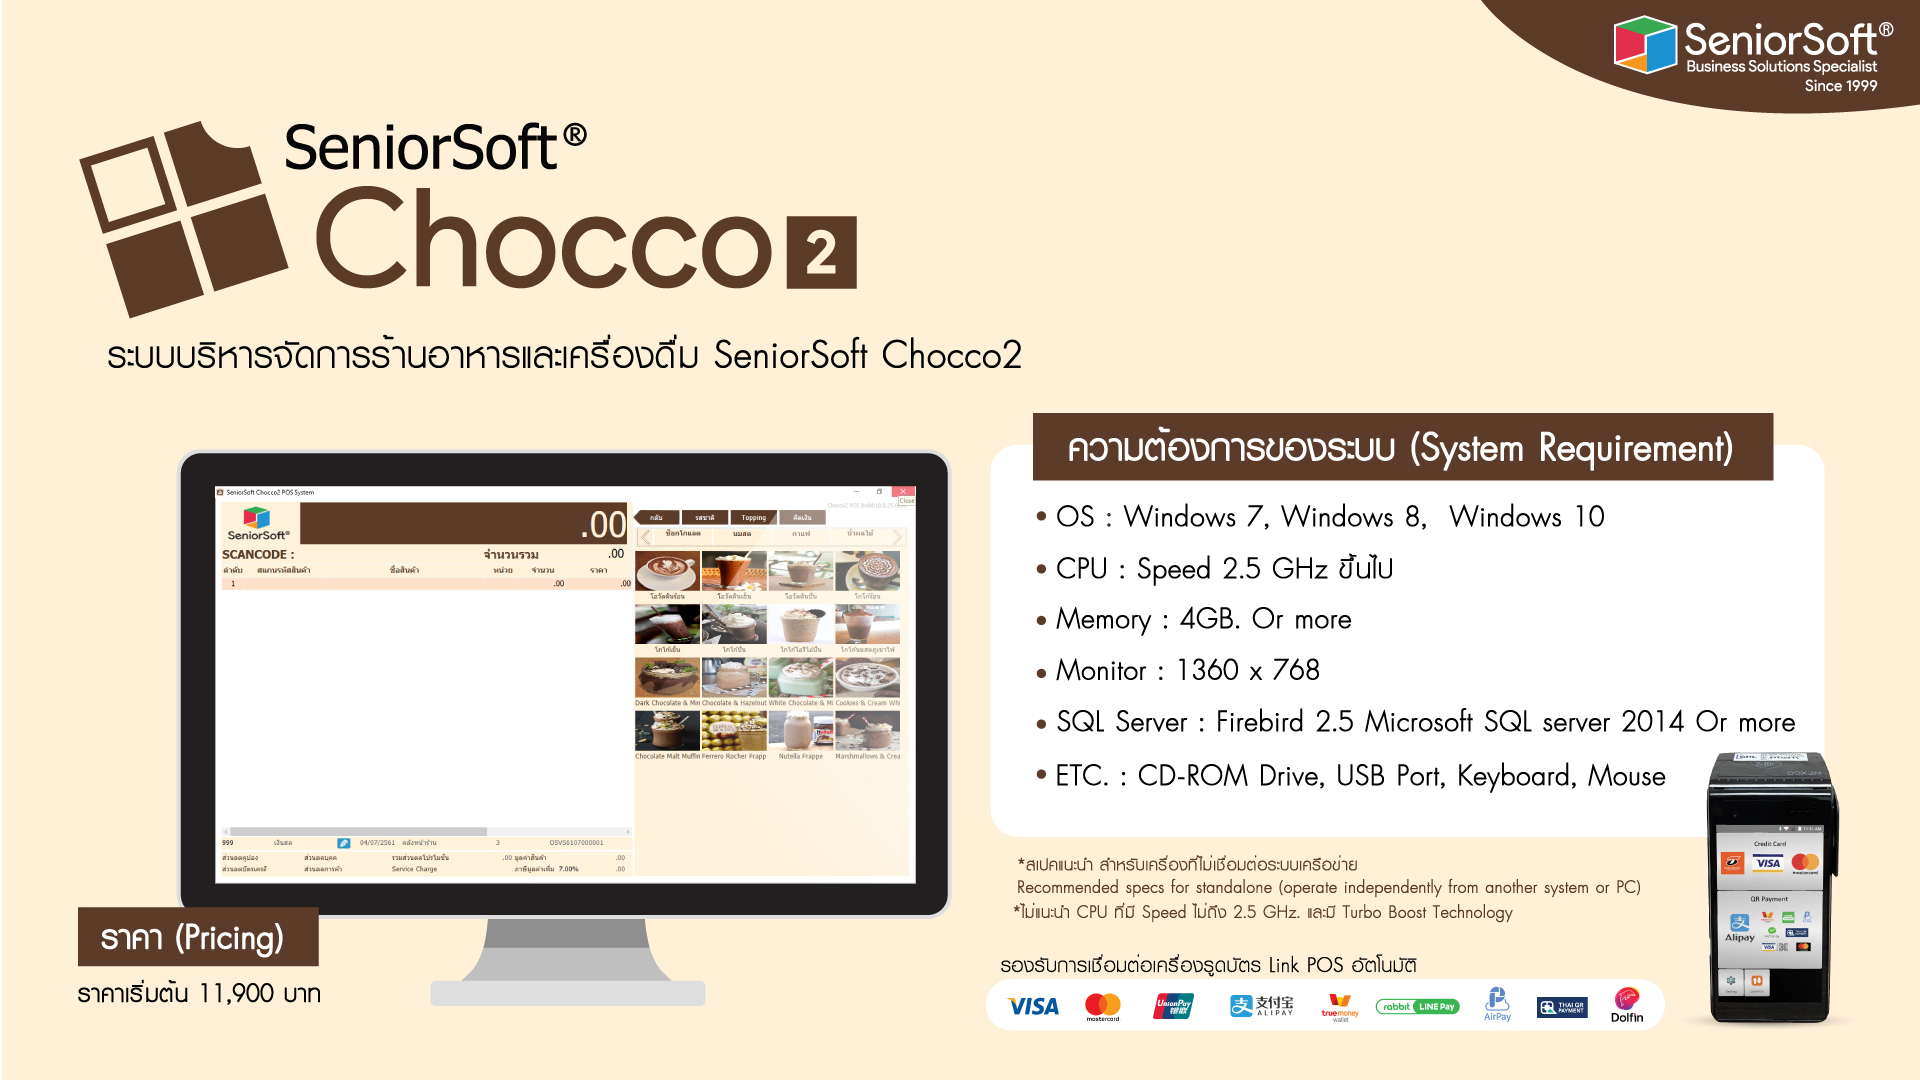 SeniorSoft chocco2 spec